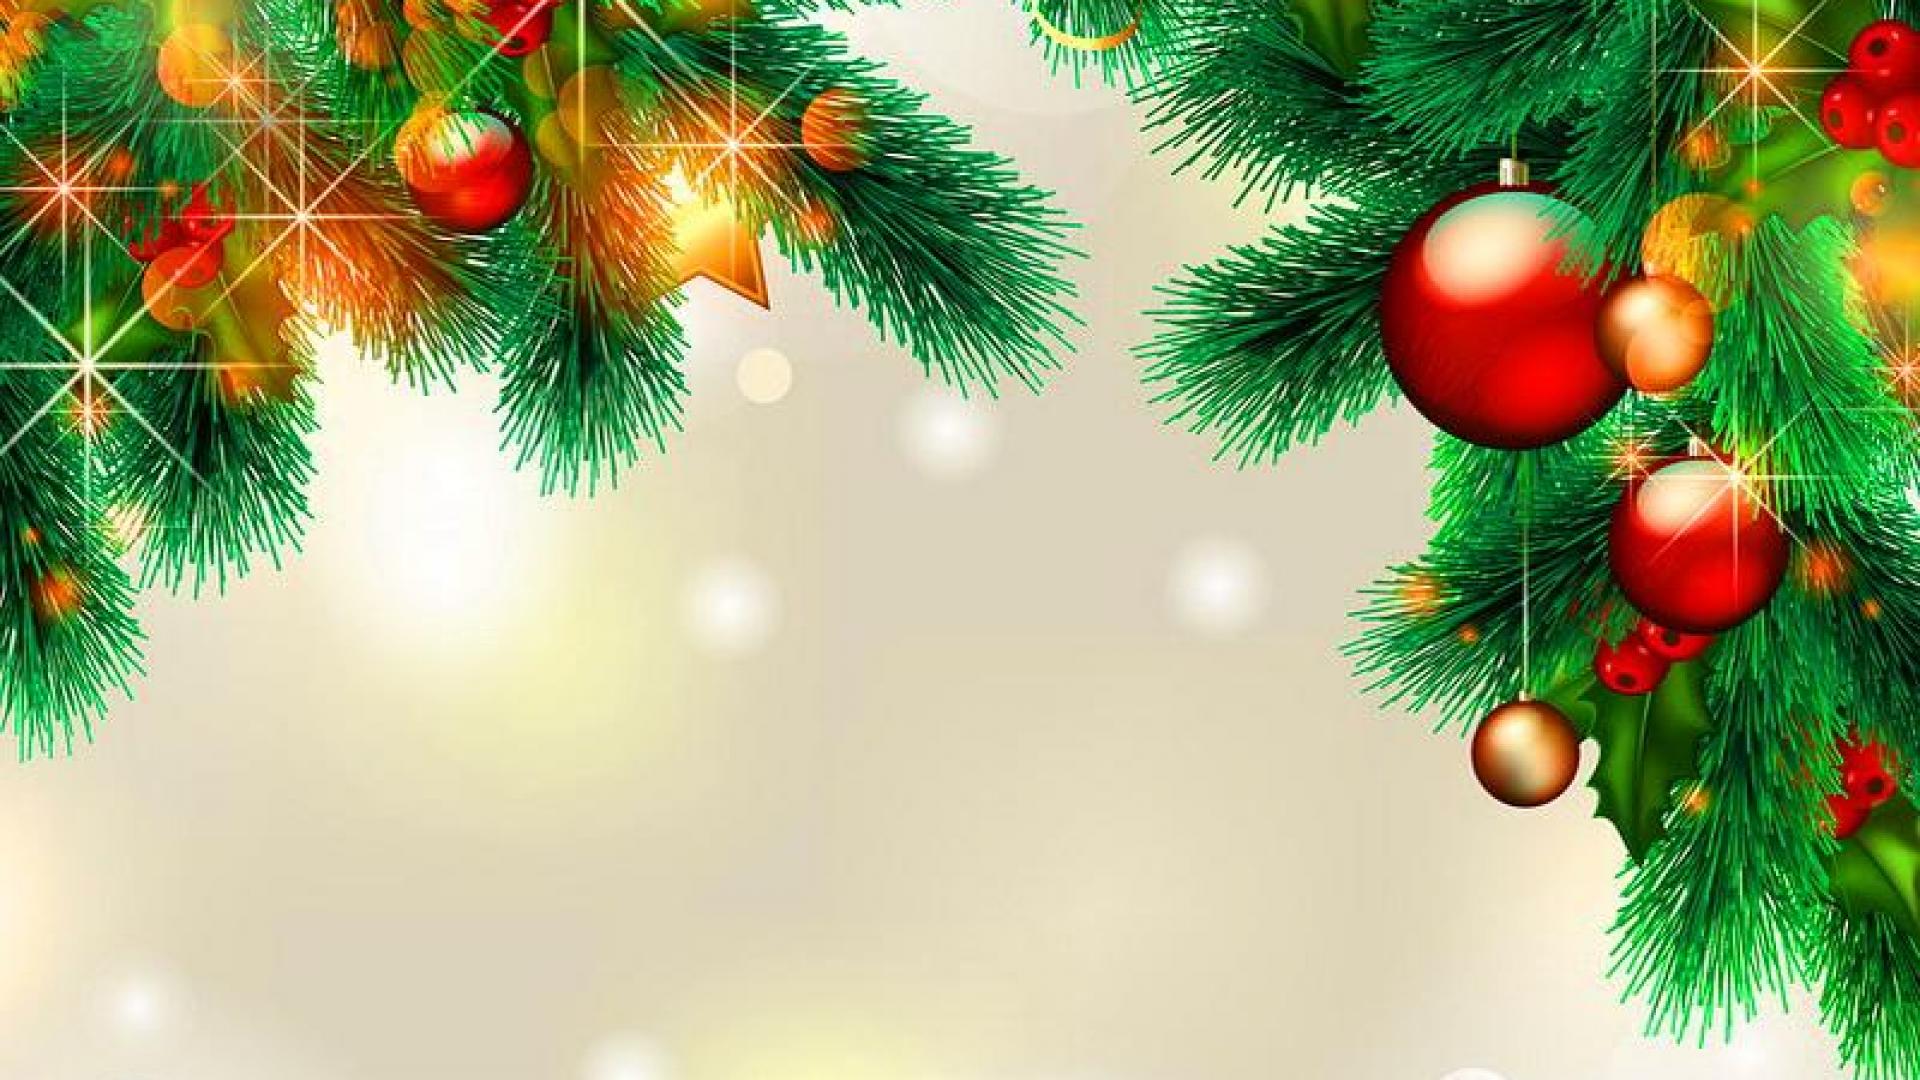 크리스마스 벽지 hd,크리스마스 장식,나무,크리스마스 트리,크리스마스 장식,전나무